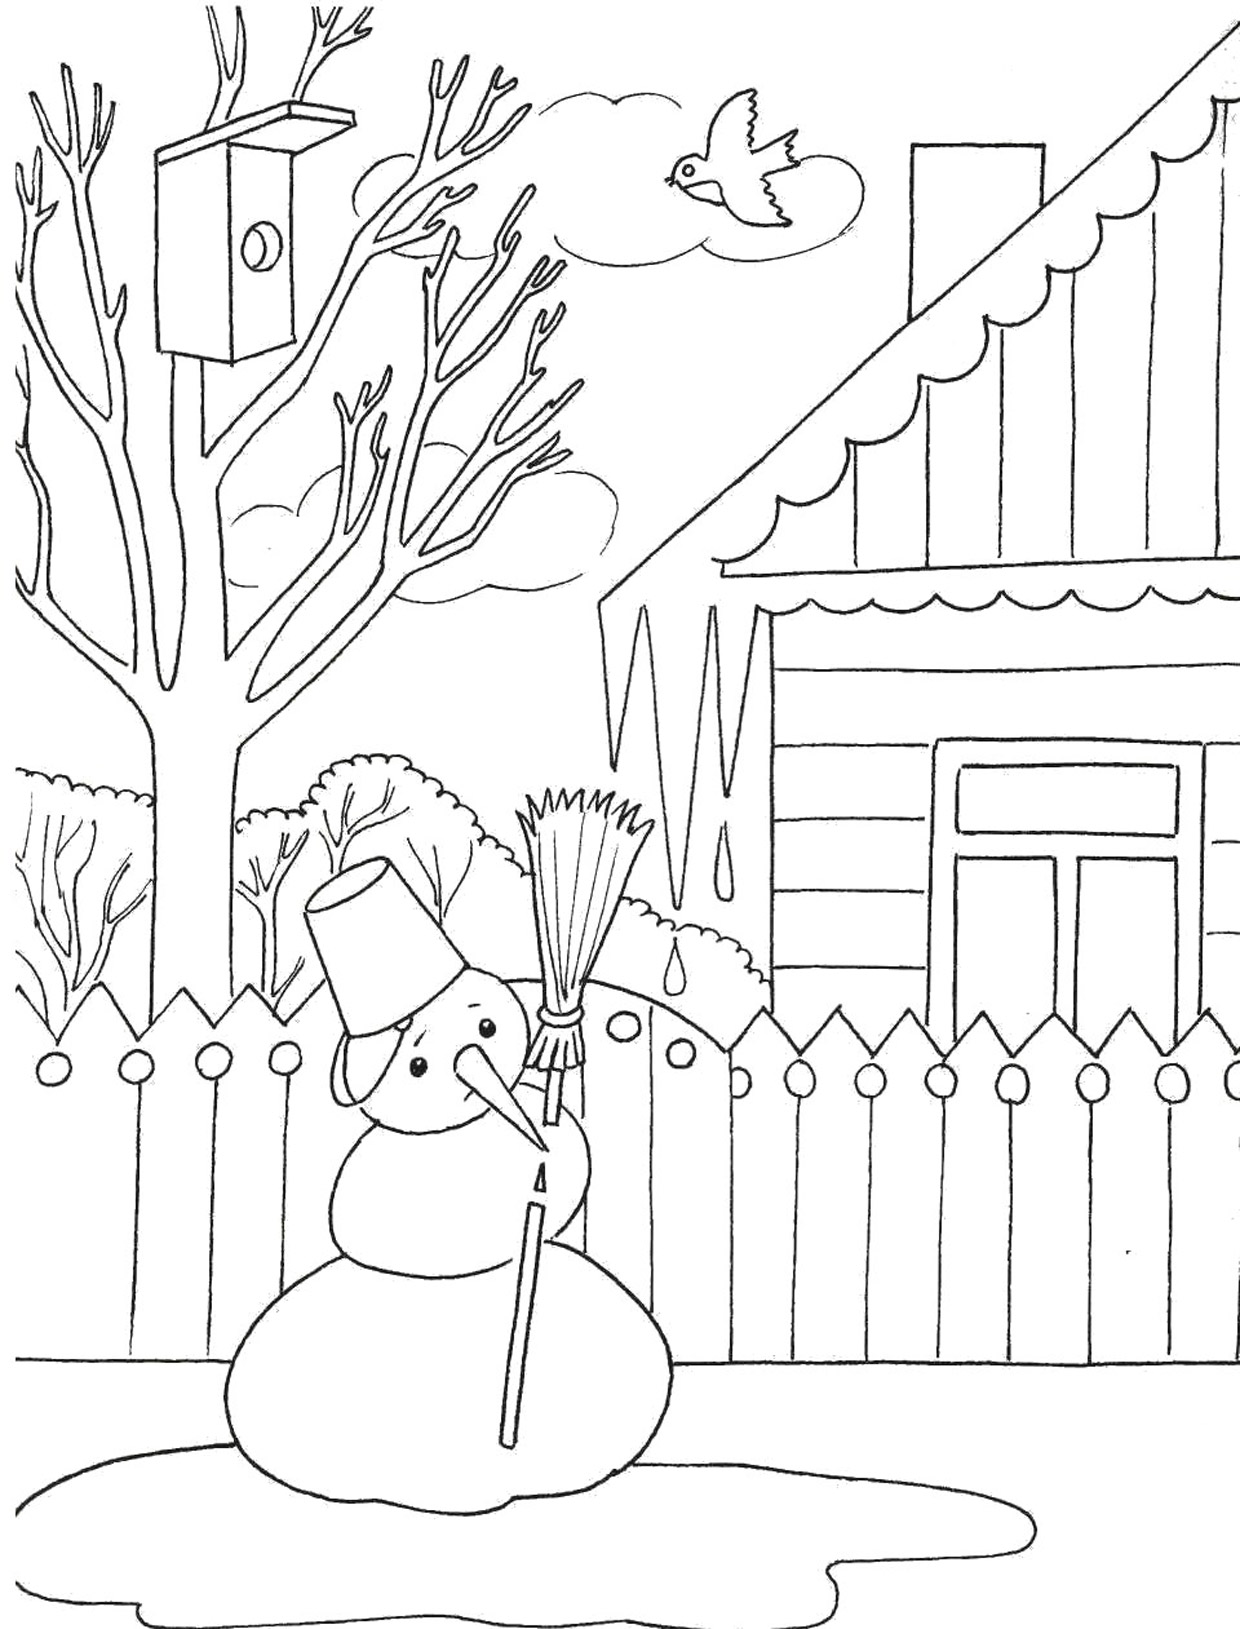 Раскраска с изображением снеговика, тающего возле двора весной (снеговик, удовольствие)